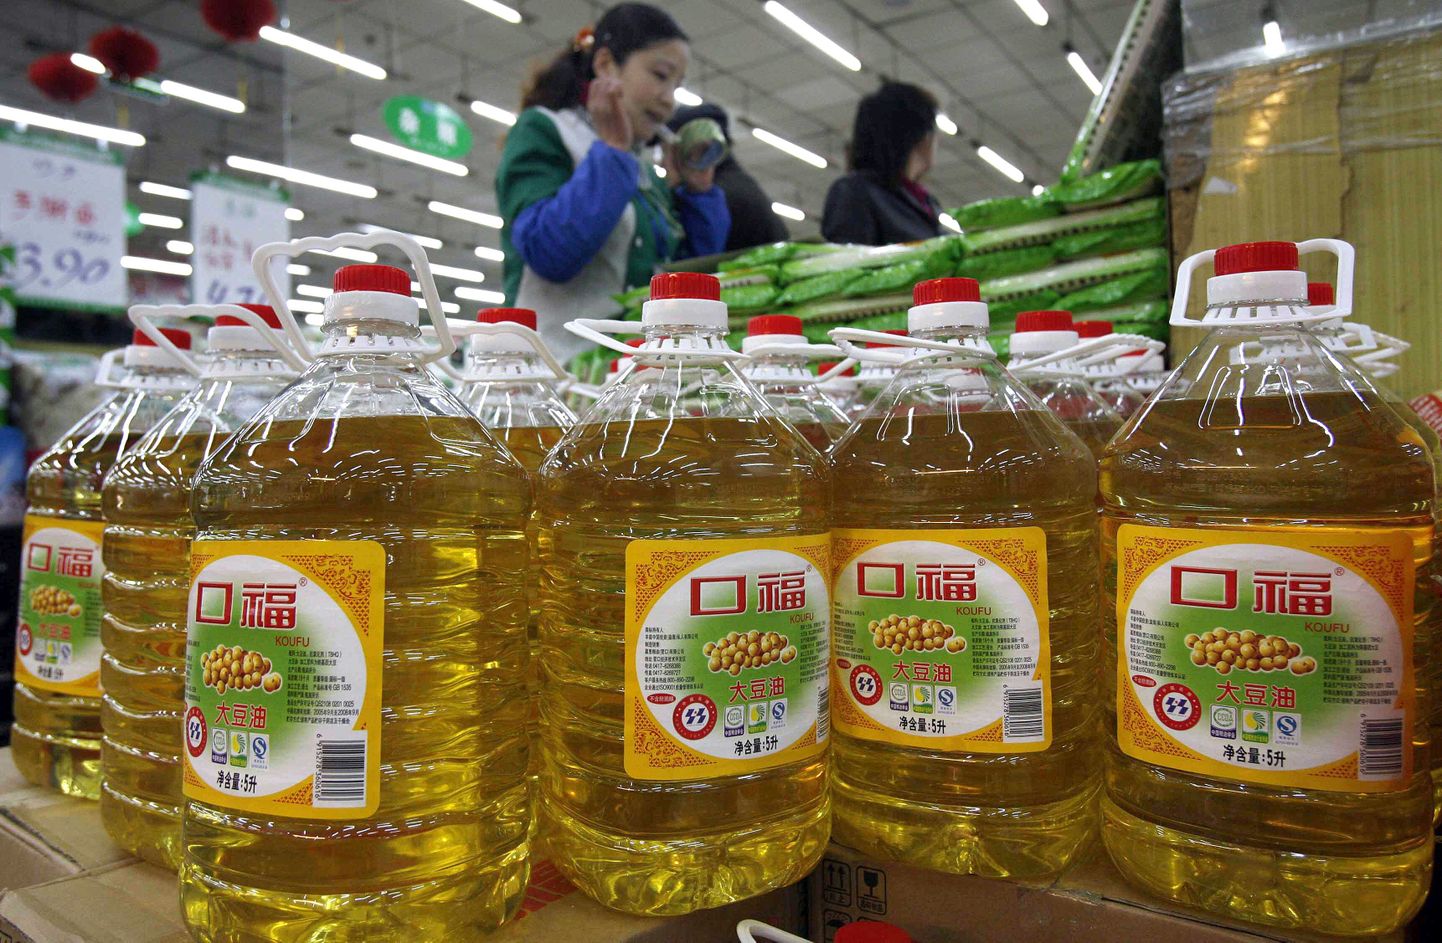 Toiduks kasutatava õli pudelid Shenyangi supermarketis 2008. aasta aprillis.